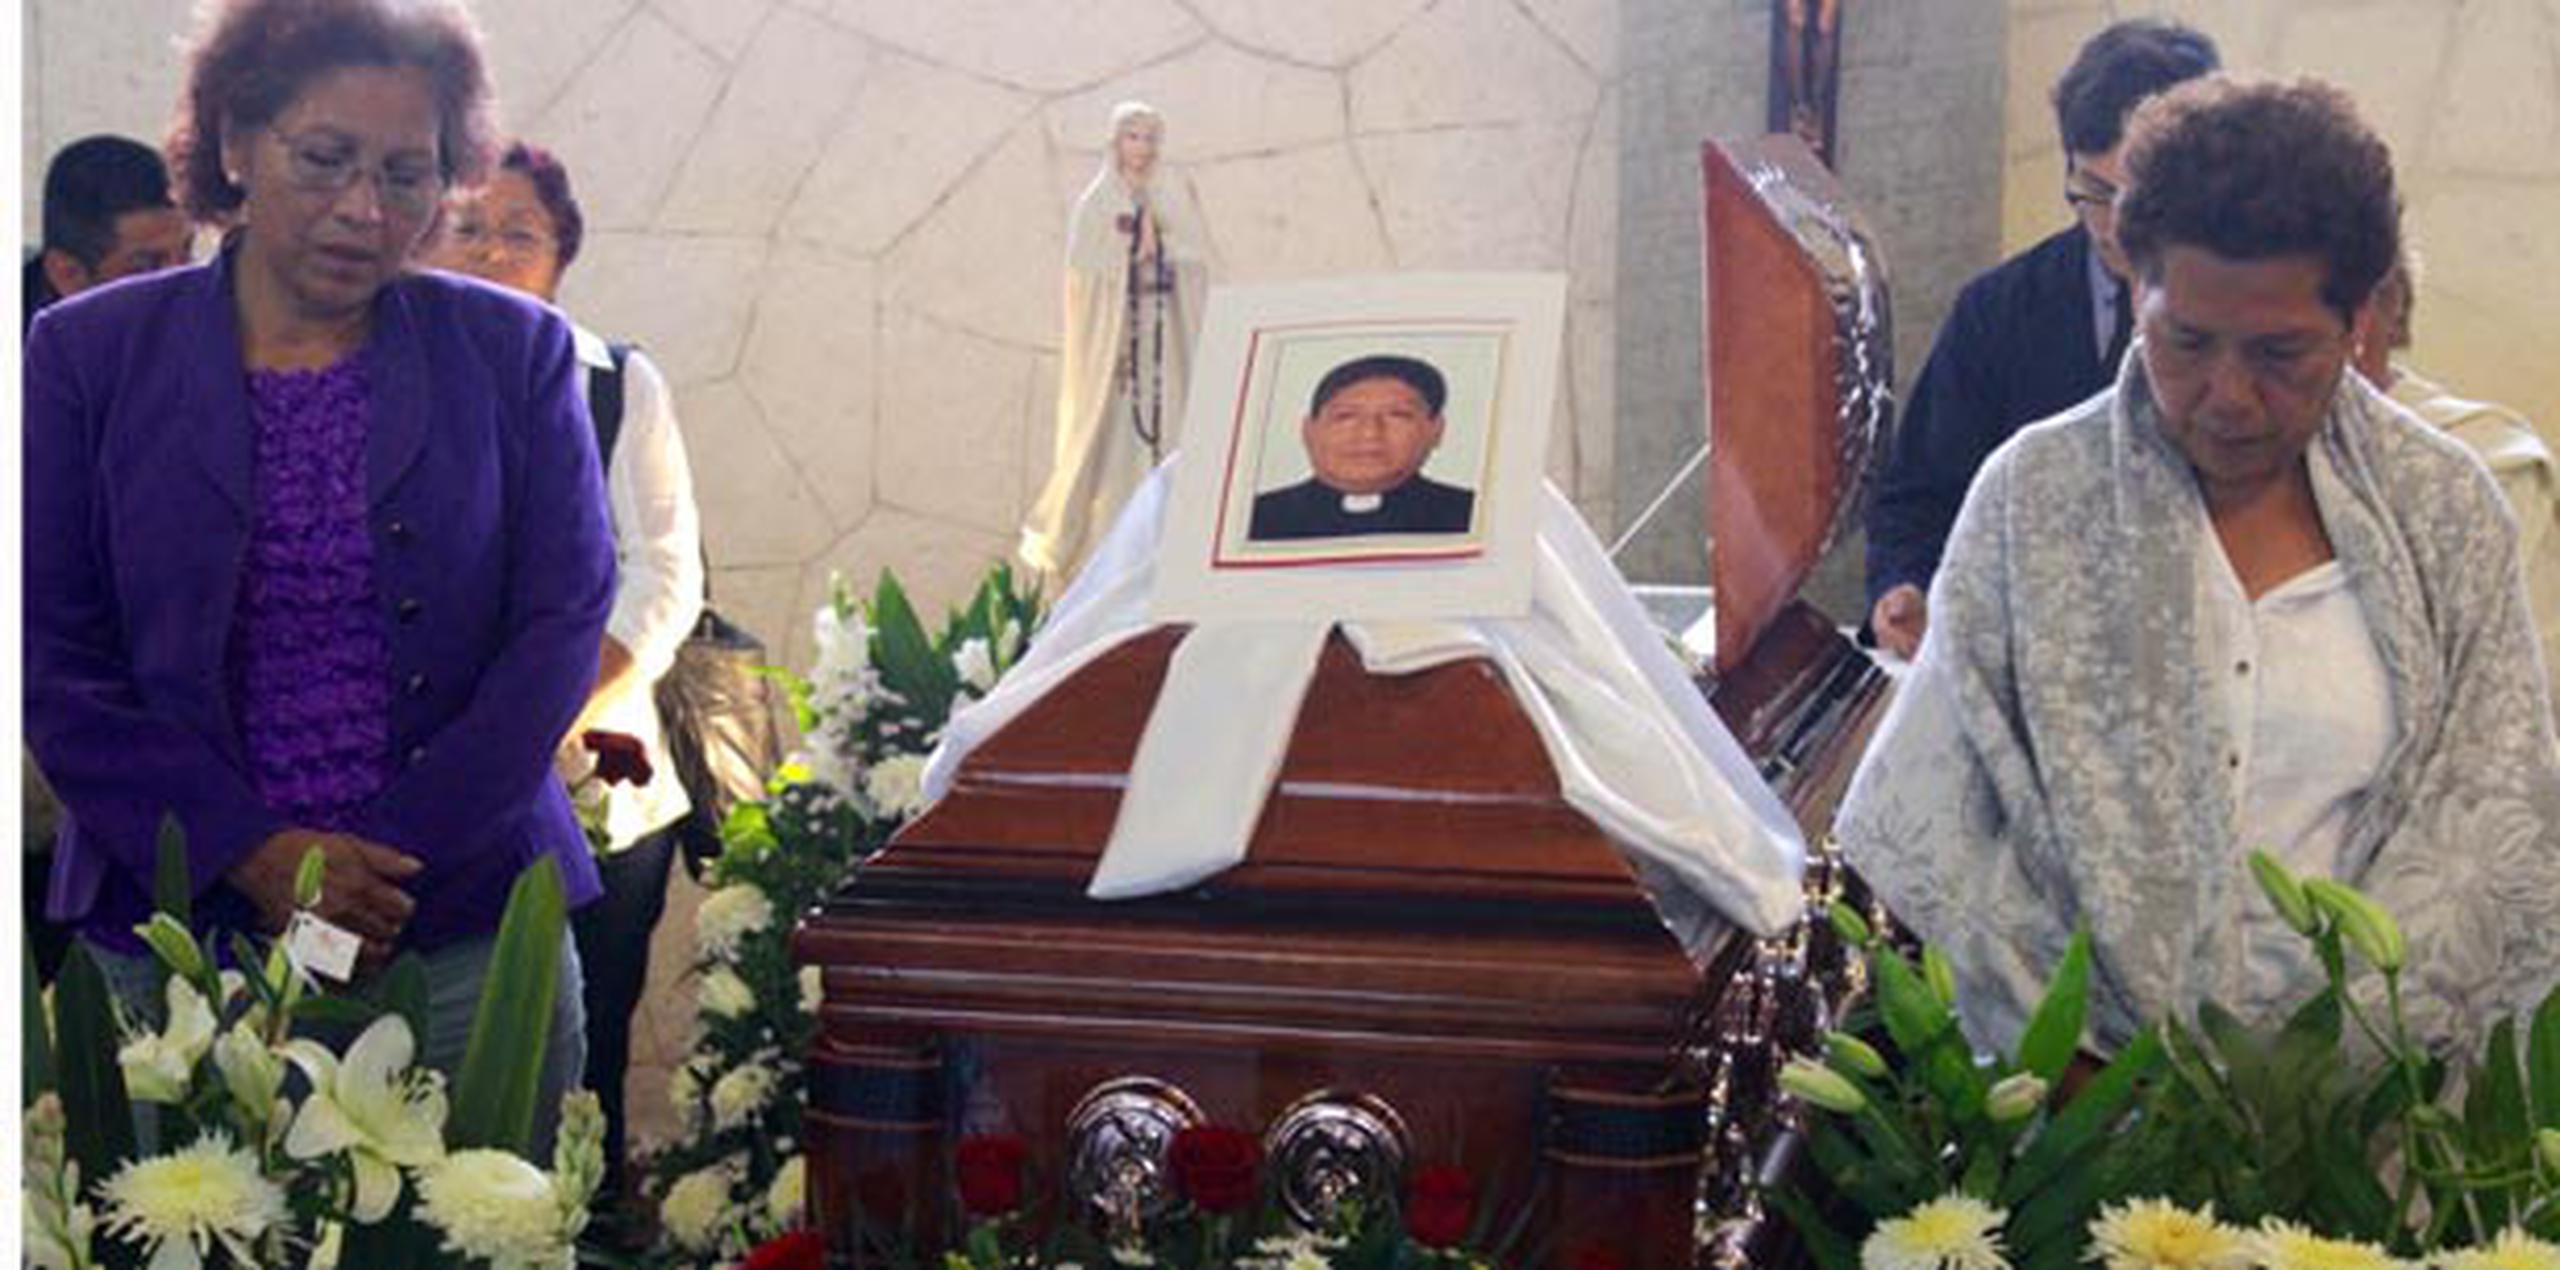 López fue secuestrado el mismo día que las autoridades en el estado de Veracruz encontraron los cadáveres de dos sacerdotes que habían sido secuestrados de su casa parroquial. (EFE/Alex Cortez)